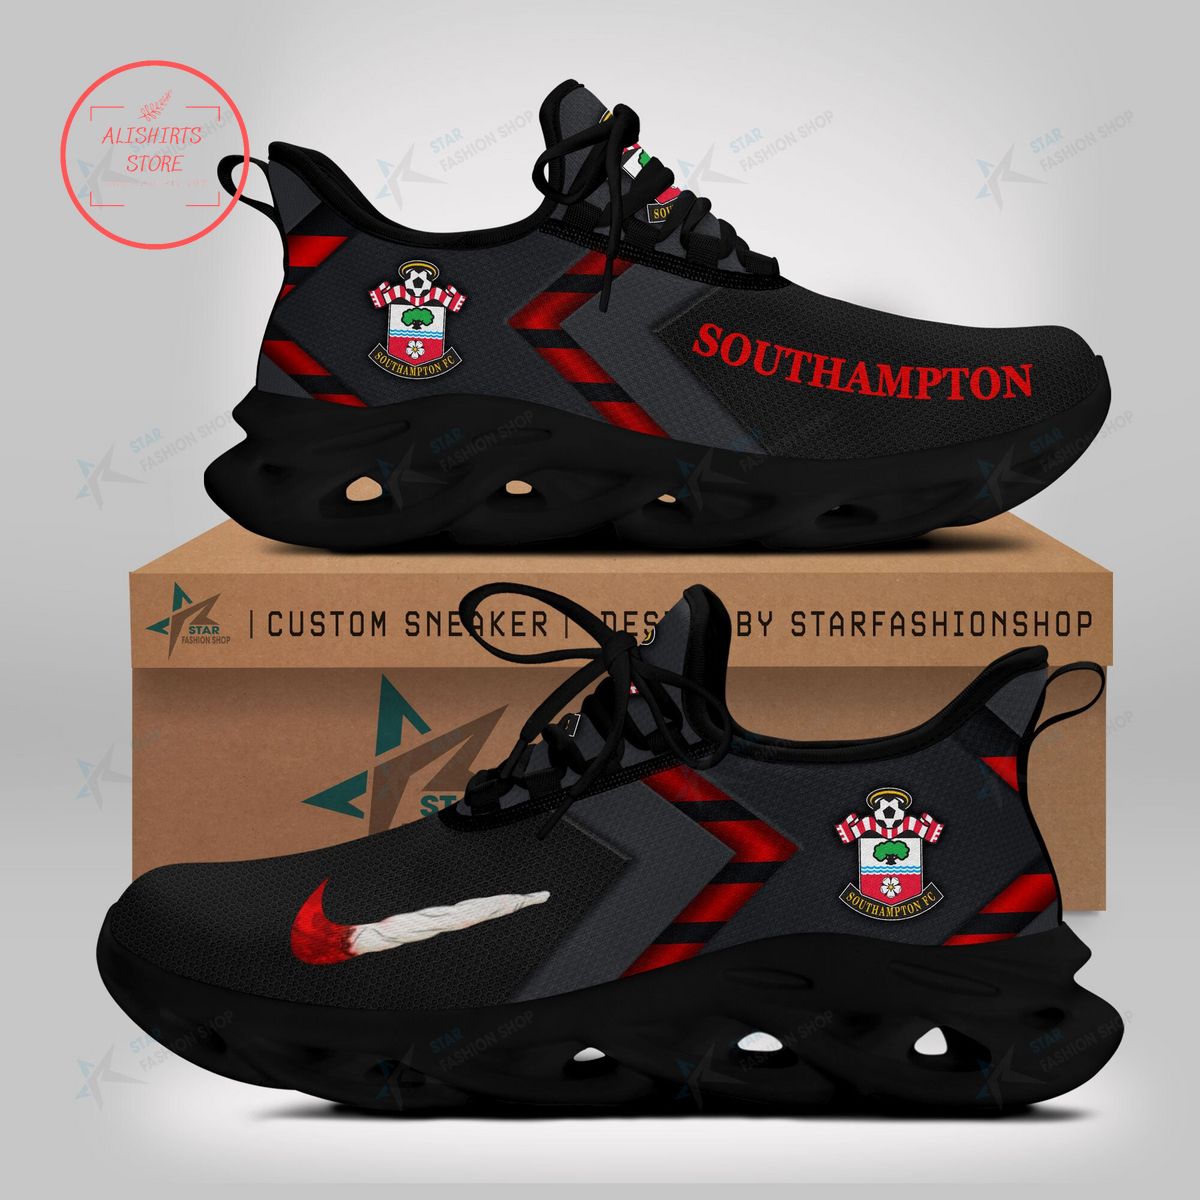 Southampton FC Max Soul Sneaker Shoes